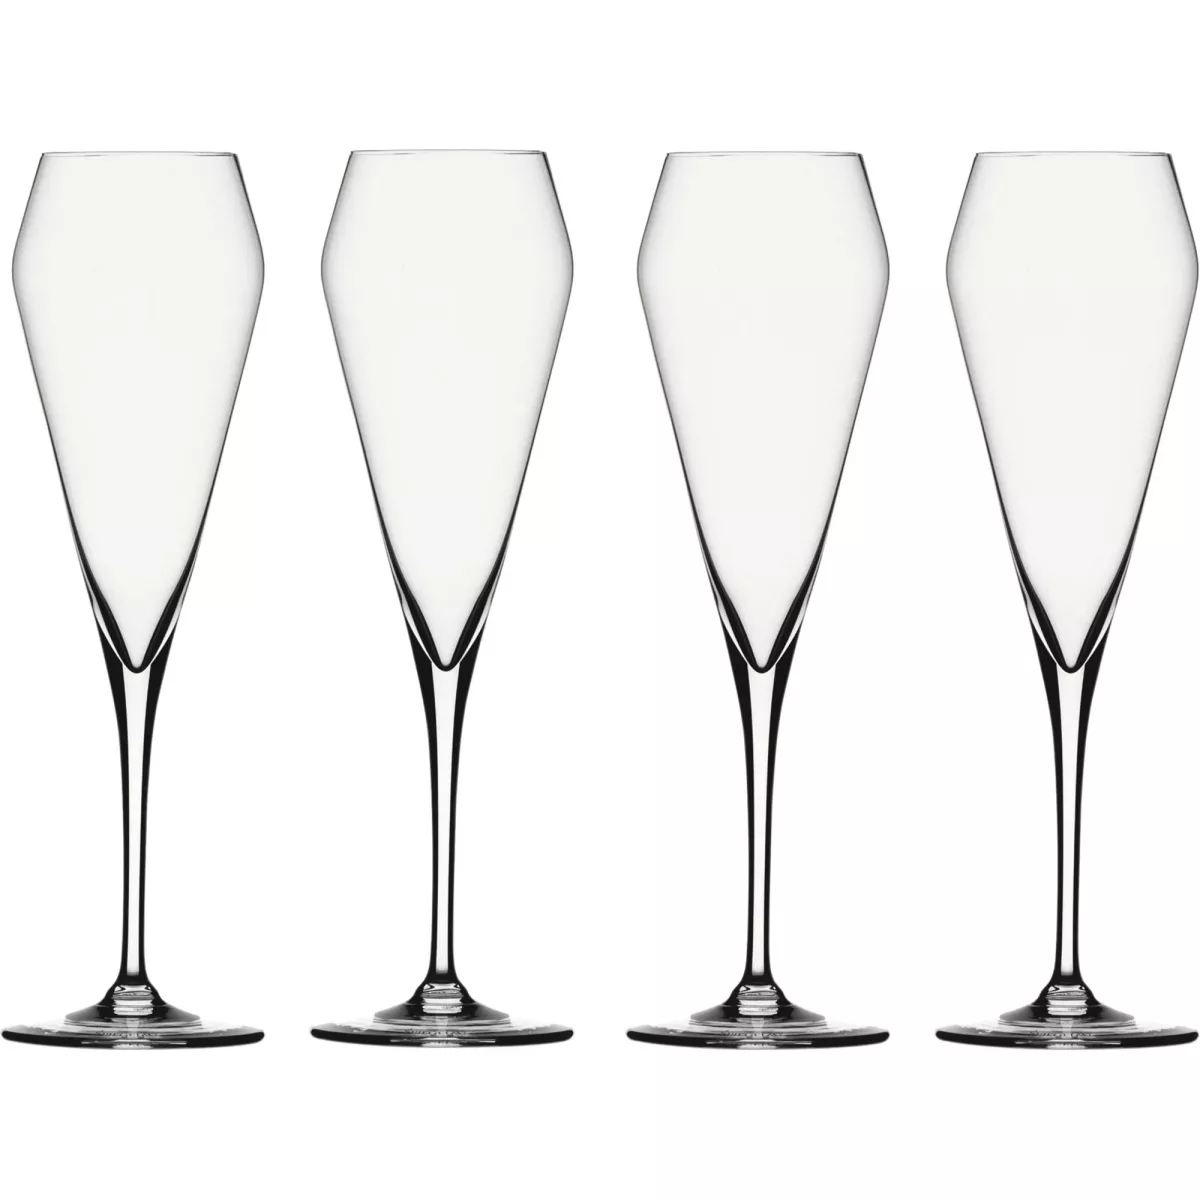 #1 - Spiegelau Willsberger Anniversary Champagneglas, 4-pak